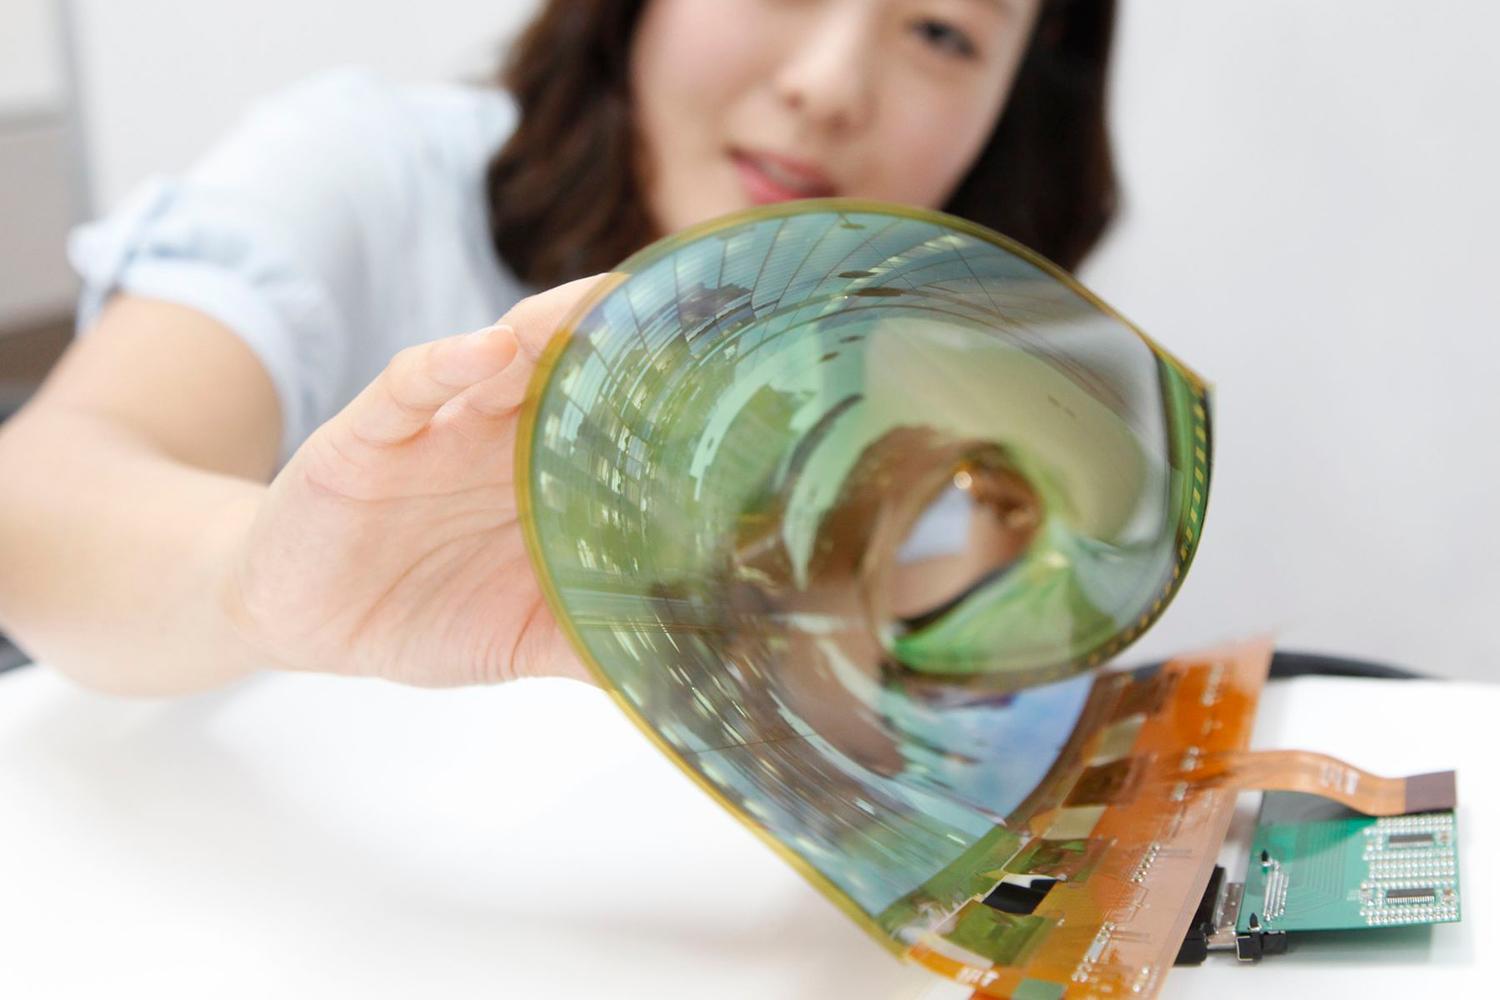 Les écrans OLED flexibles pourraient offrir de nouvelles conceptions à l'avenir